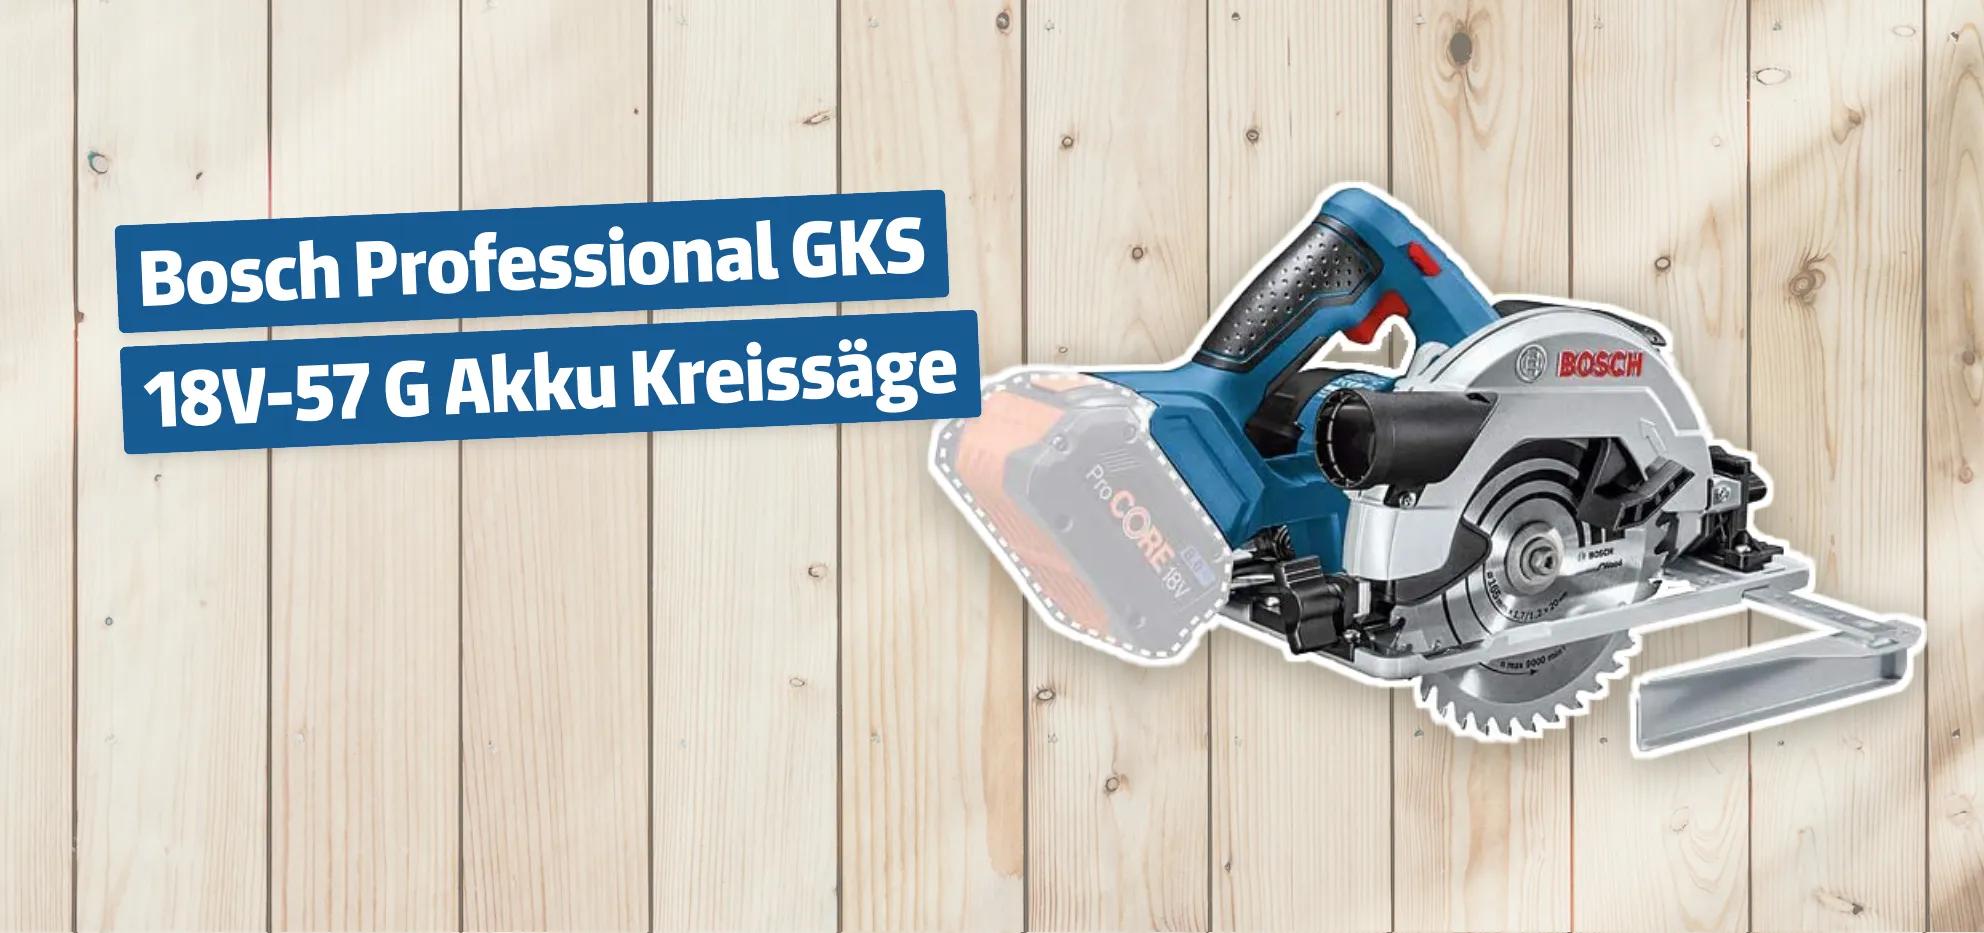 Bosch Professional GKS 18V-57 G Akku Kreissäge